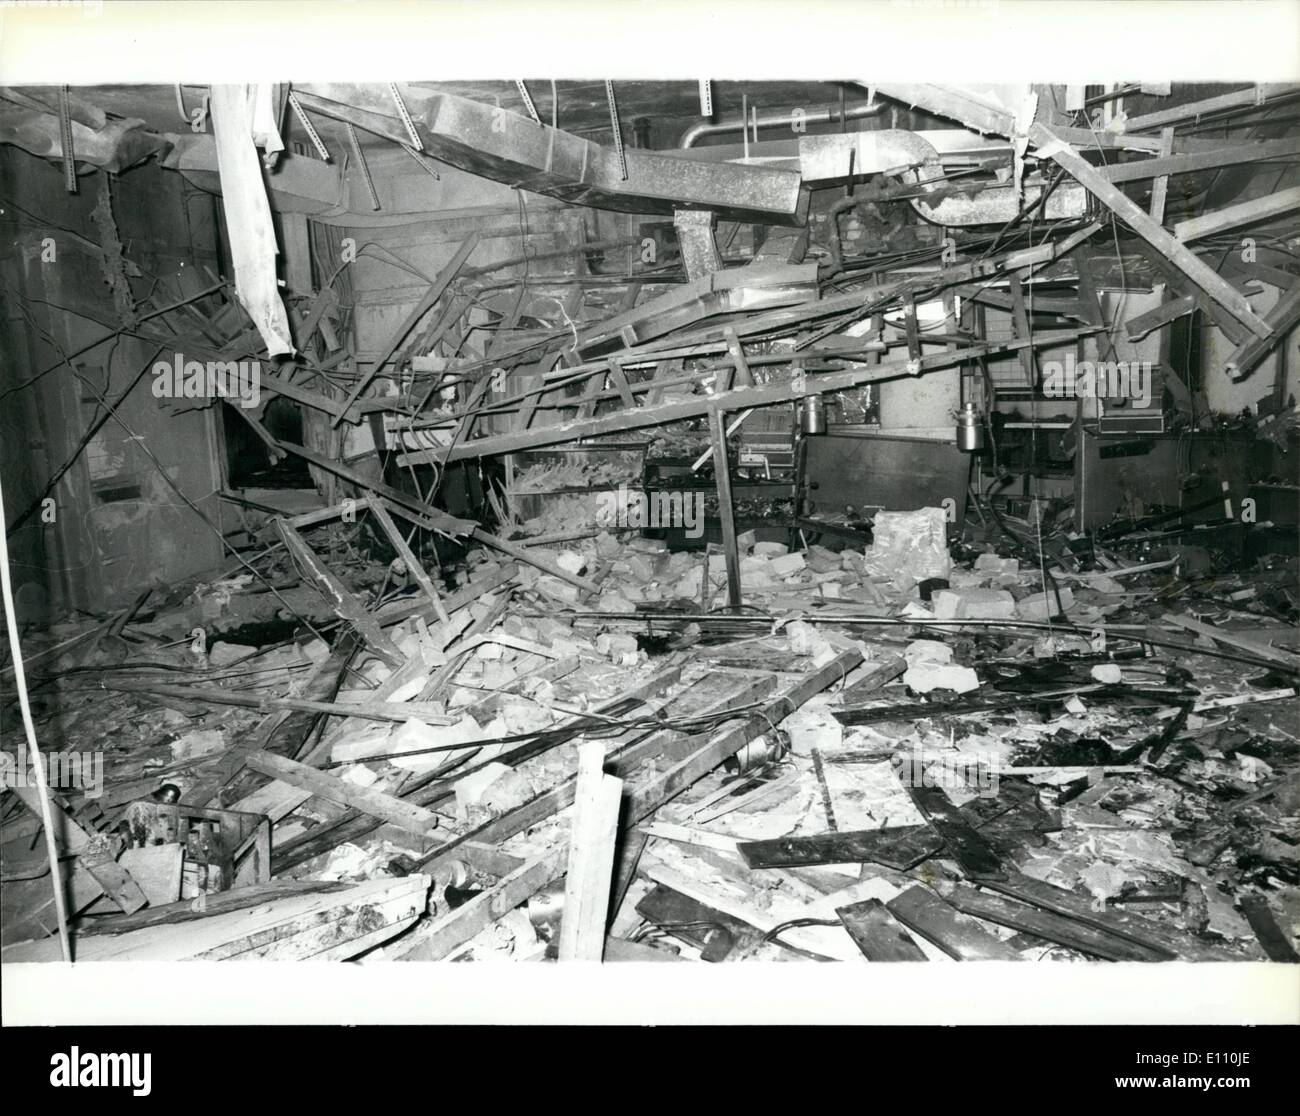 Nov. 11, 1974 - 19 morti e molti feriti in attentati dinamitardi a Birmingham.: 19 persone sono state uccise e 200 feriti da IRA le bombe dei terroristi che è esplosa in due case pubbliche nel centro di Birmingham la scorsa notte. Una bomba è stata al Mulberry Bush public house e l'altra presso la taverna della città. Mostra fotografica di vista che mostra la devastazione causata dalla bomba al Mulberry Bush public house di Birmingham la scorsa notte. Foto Stock